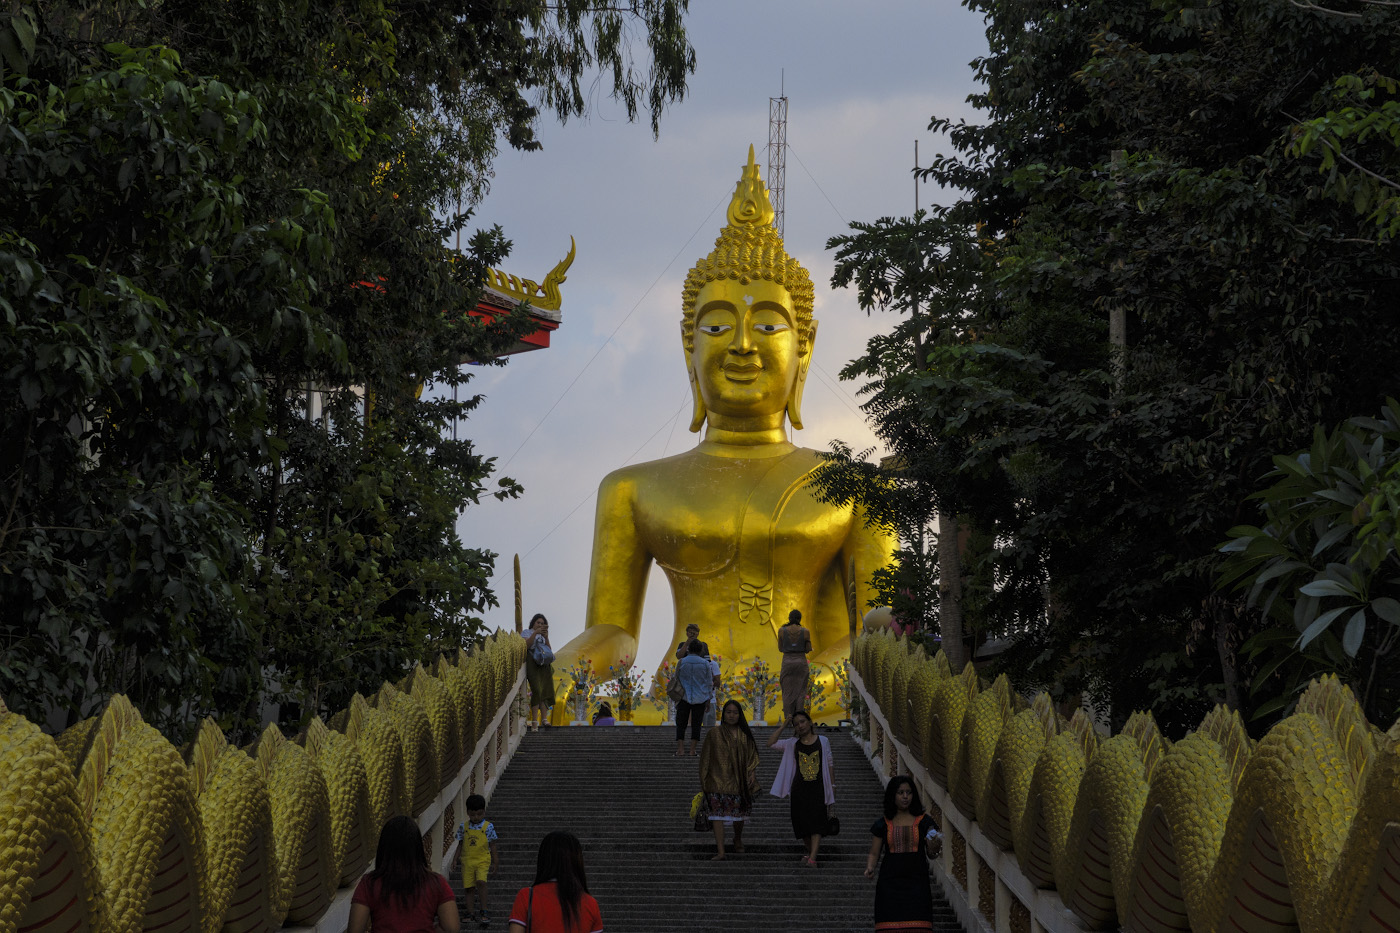 Фотография 37. Биг Будда. Какие экскурсии посетить в Паттайе. Отчет о четвертой поездке в Таиланд самостоятельно. 1/200, -0.67, 8.0, 125, 36.8.